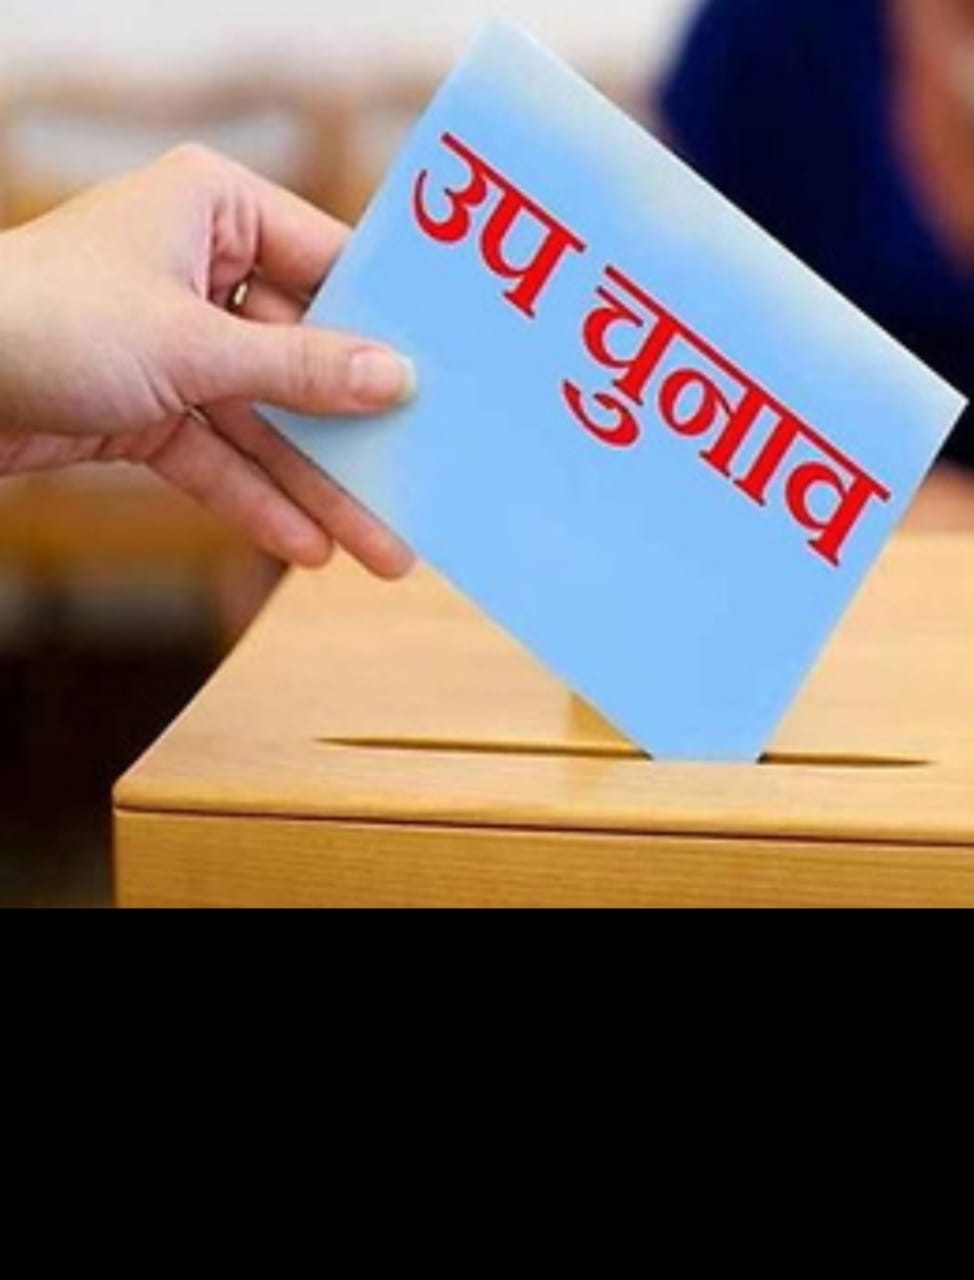  गोविंद नगर उप चुनाव,भाजपा और सपा ने नही खोले पत्ते